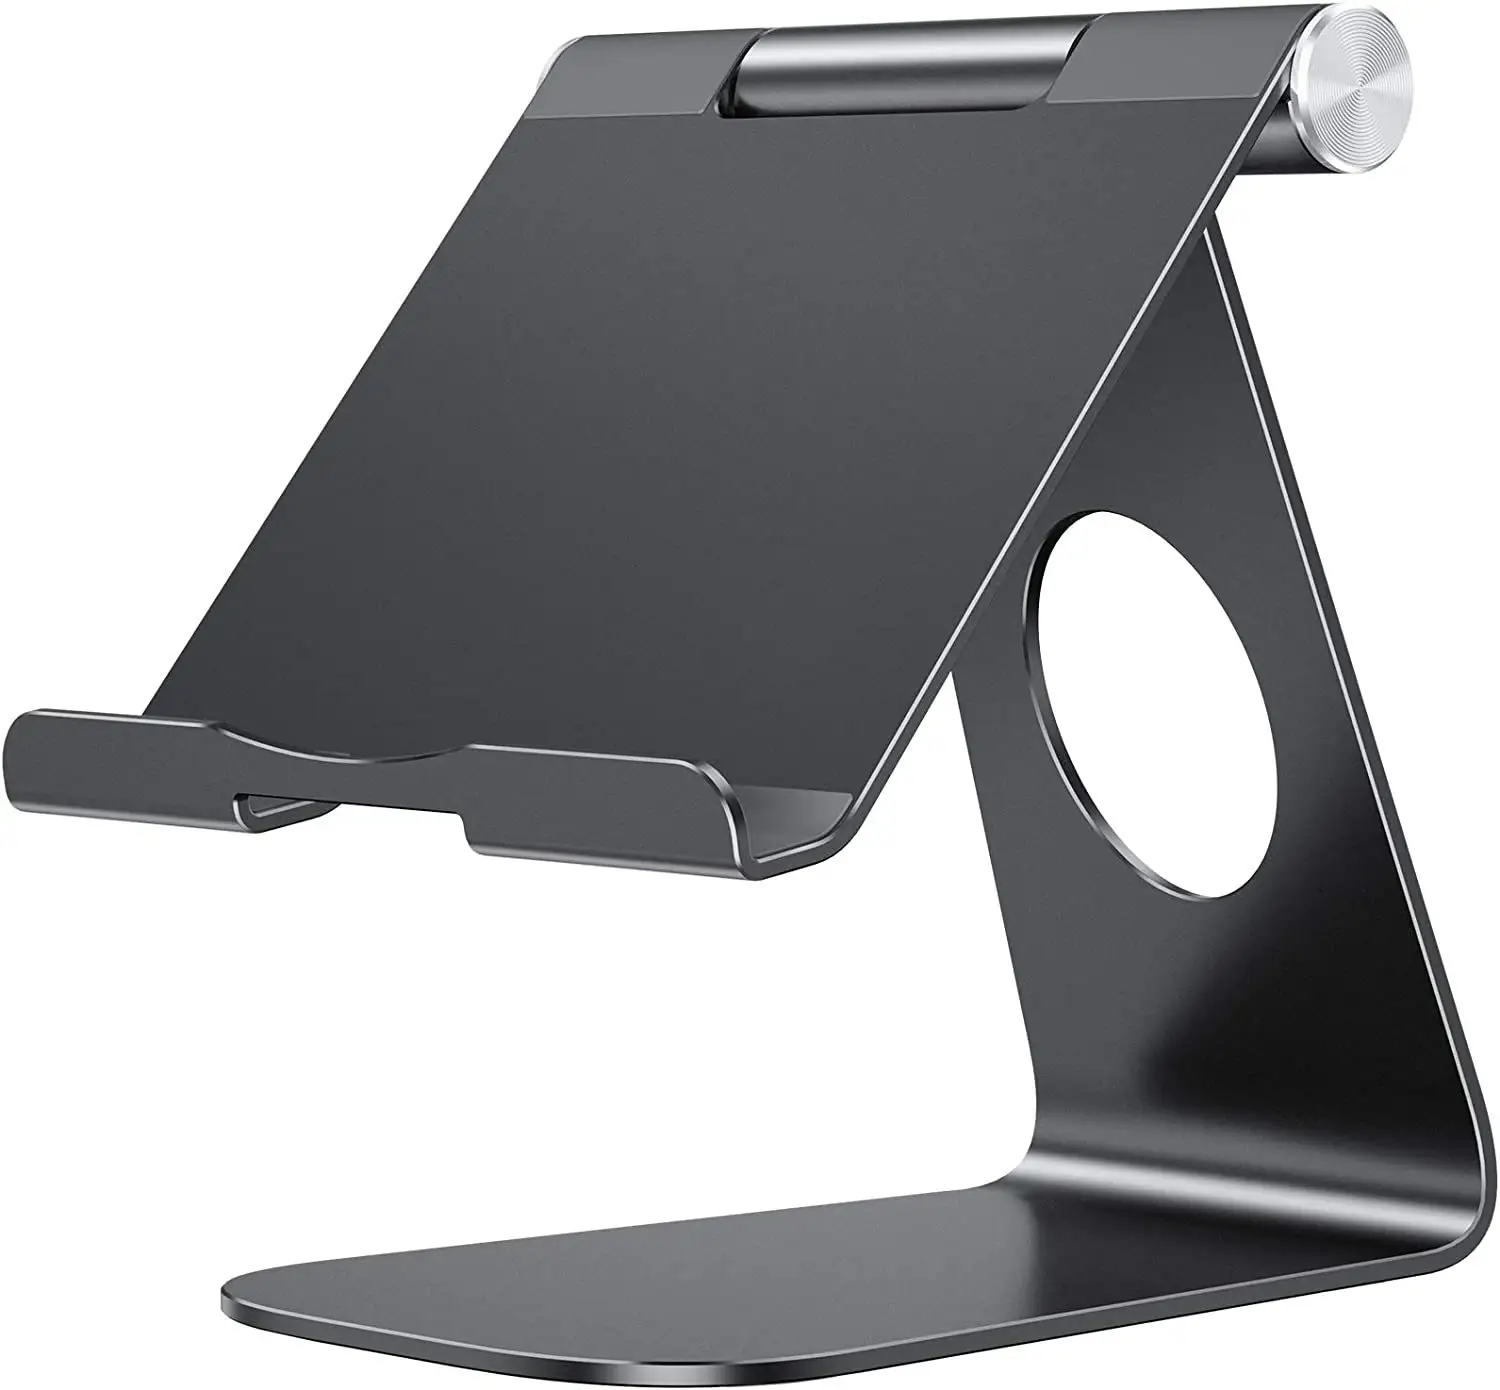 AilesTecca suporte de metal ajustável portátil de alta qualidade para celular suporte preto puro ergonômico encaixável para laptop